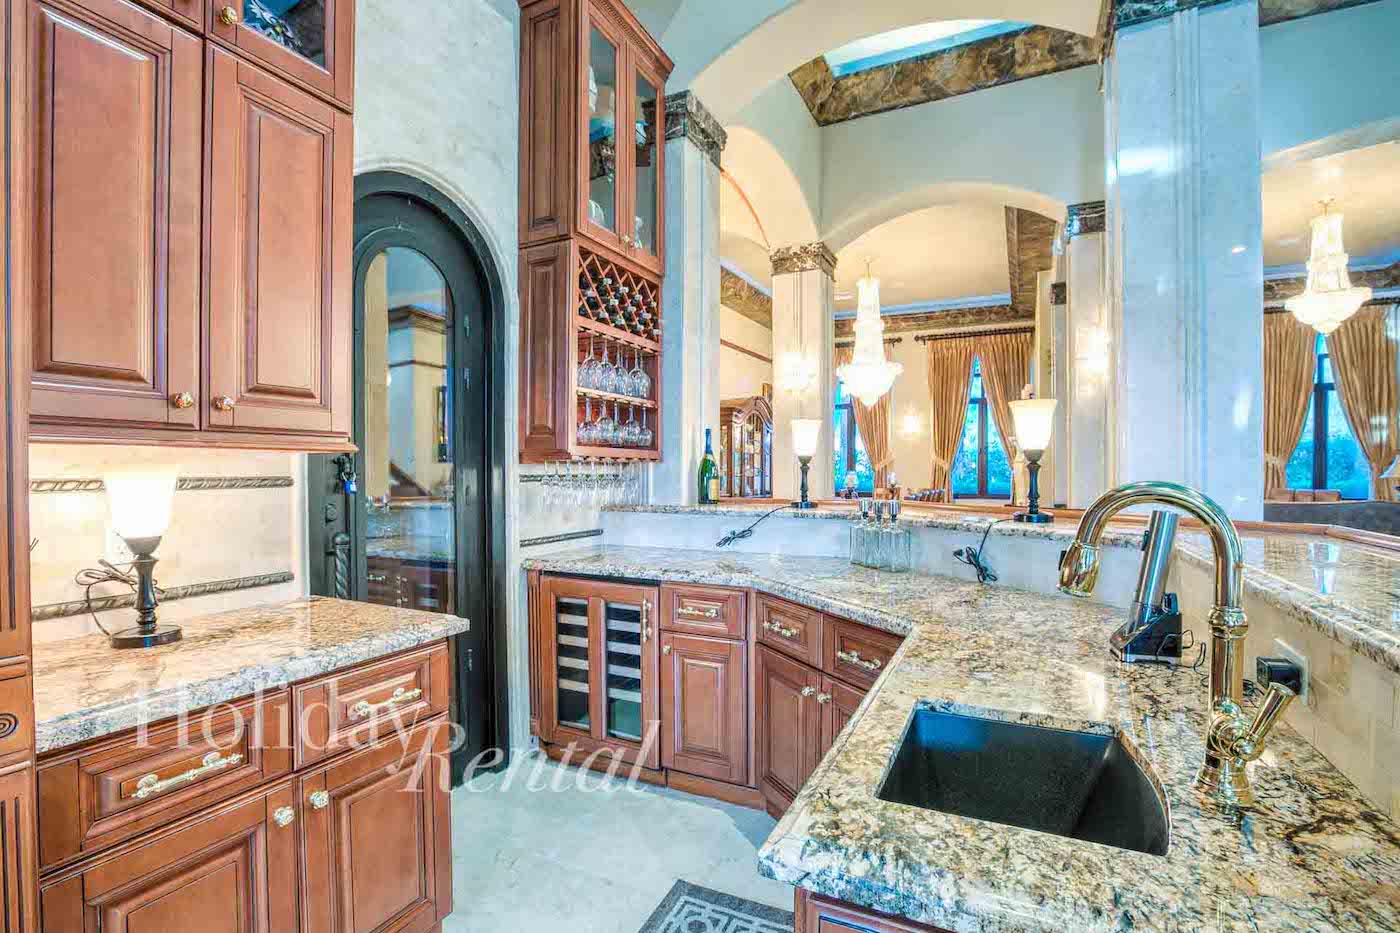 luxury vacation villa kitchen